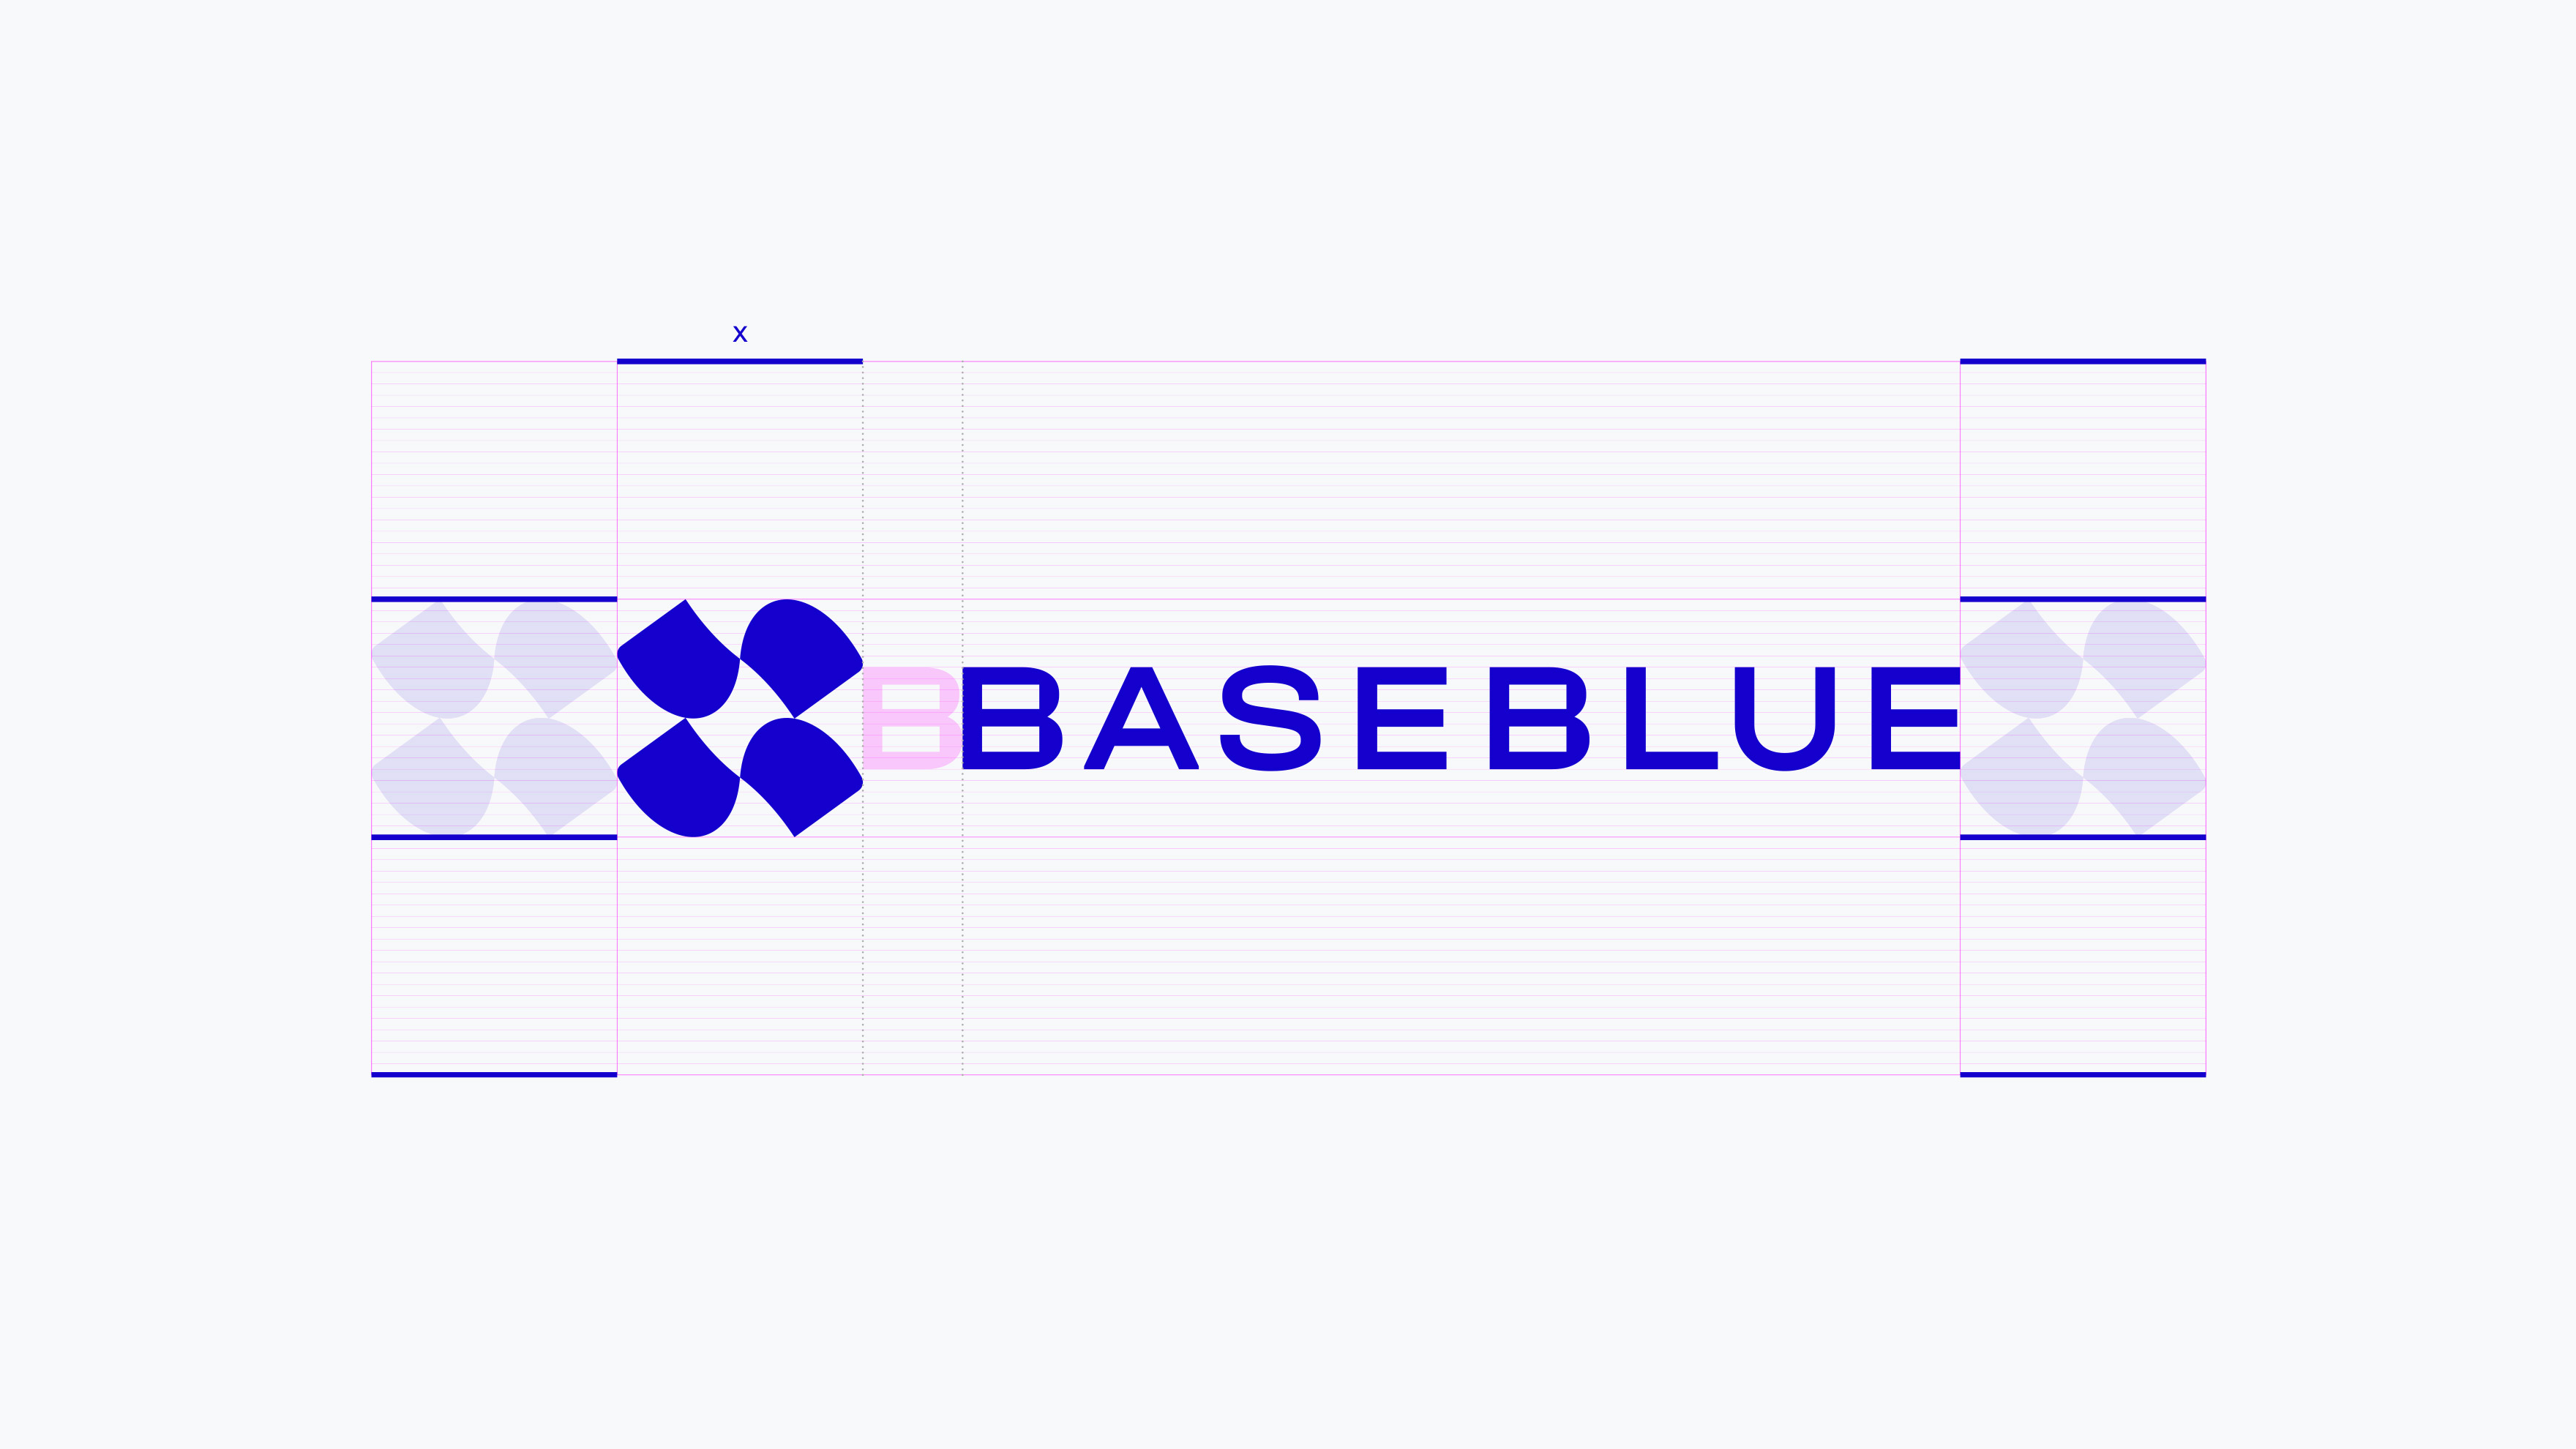 baseblue branding logo guidelines kommigraphics